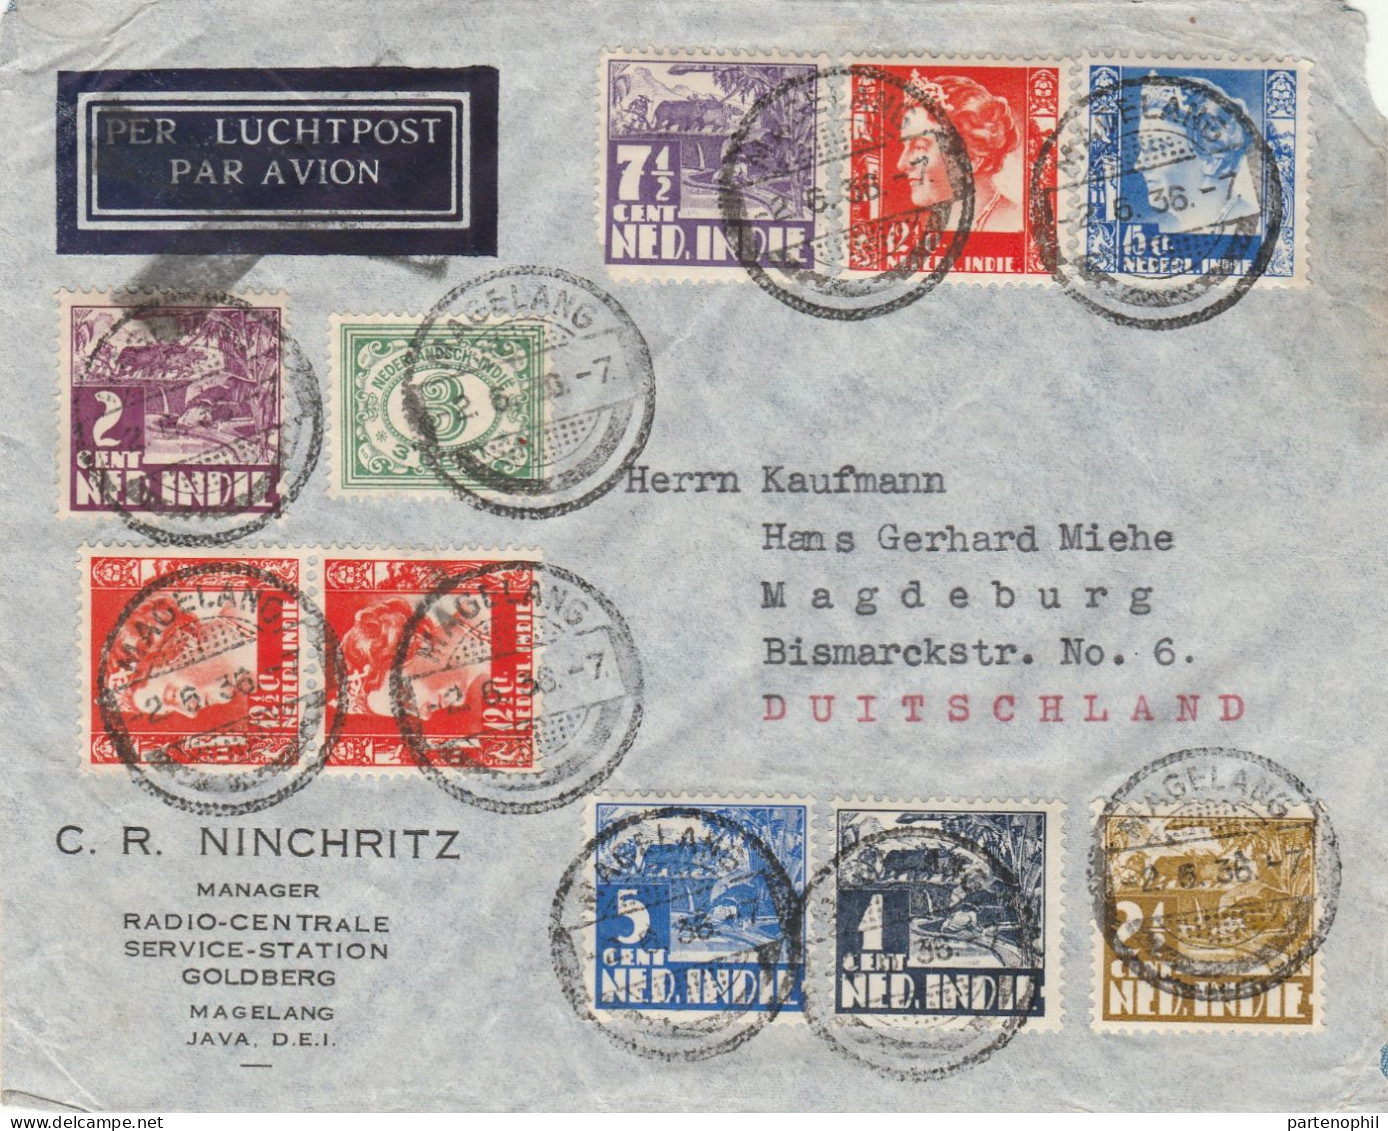 688 - Area Europea - Oltremare 1895/1950 - Insieme di 28 tra lettere e cartoline con interessanti affrancature, notate a